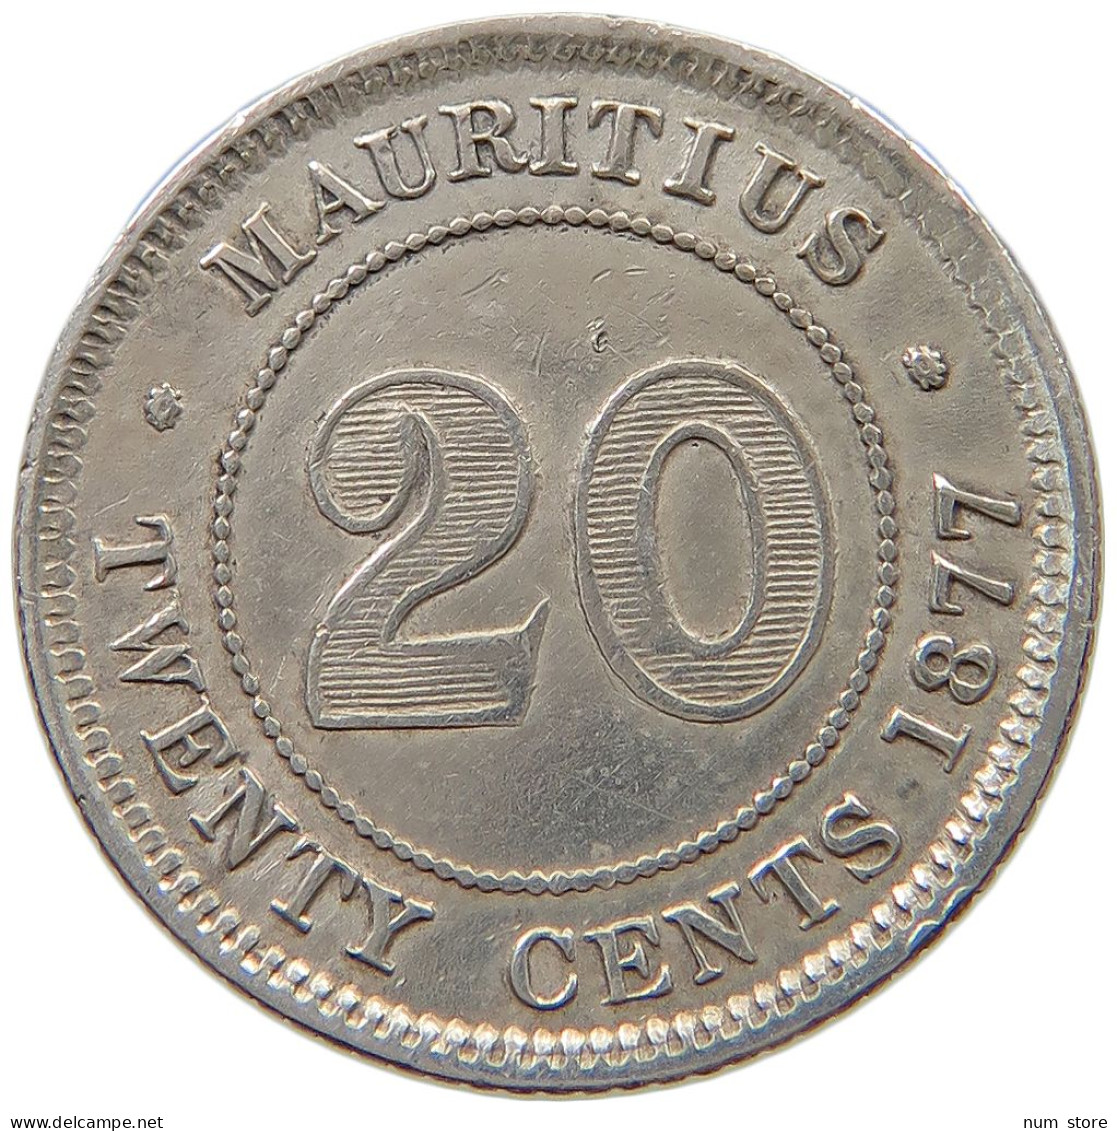 MAURITIUS 20 CENTS 1877 H Victoria 1837-1901 #t108 0115 - Mauritius